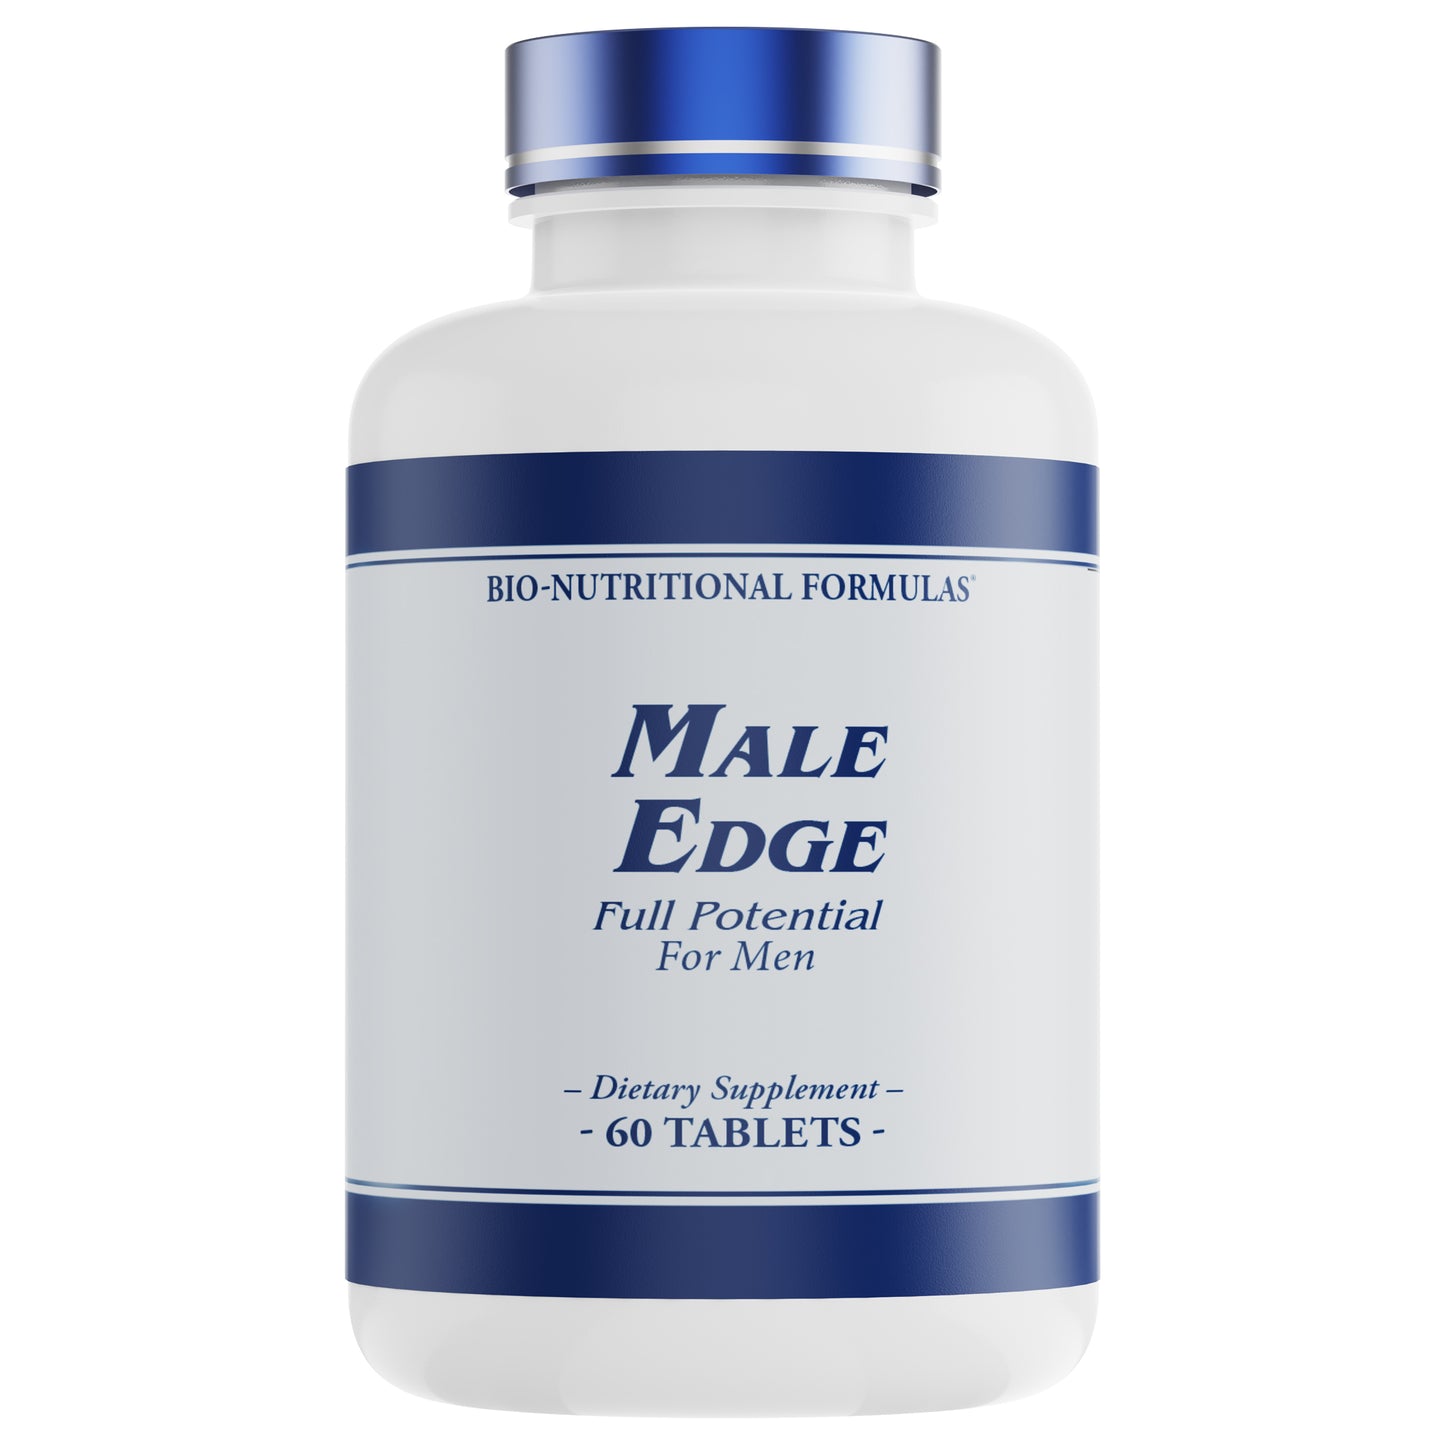 Male Edge: Full Potential For Men Multivitamin - 60 Tablets